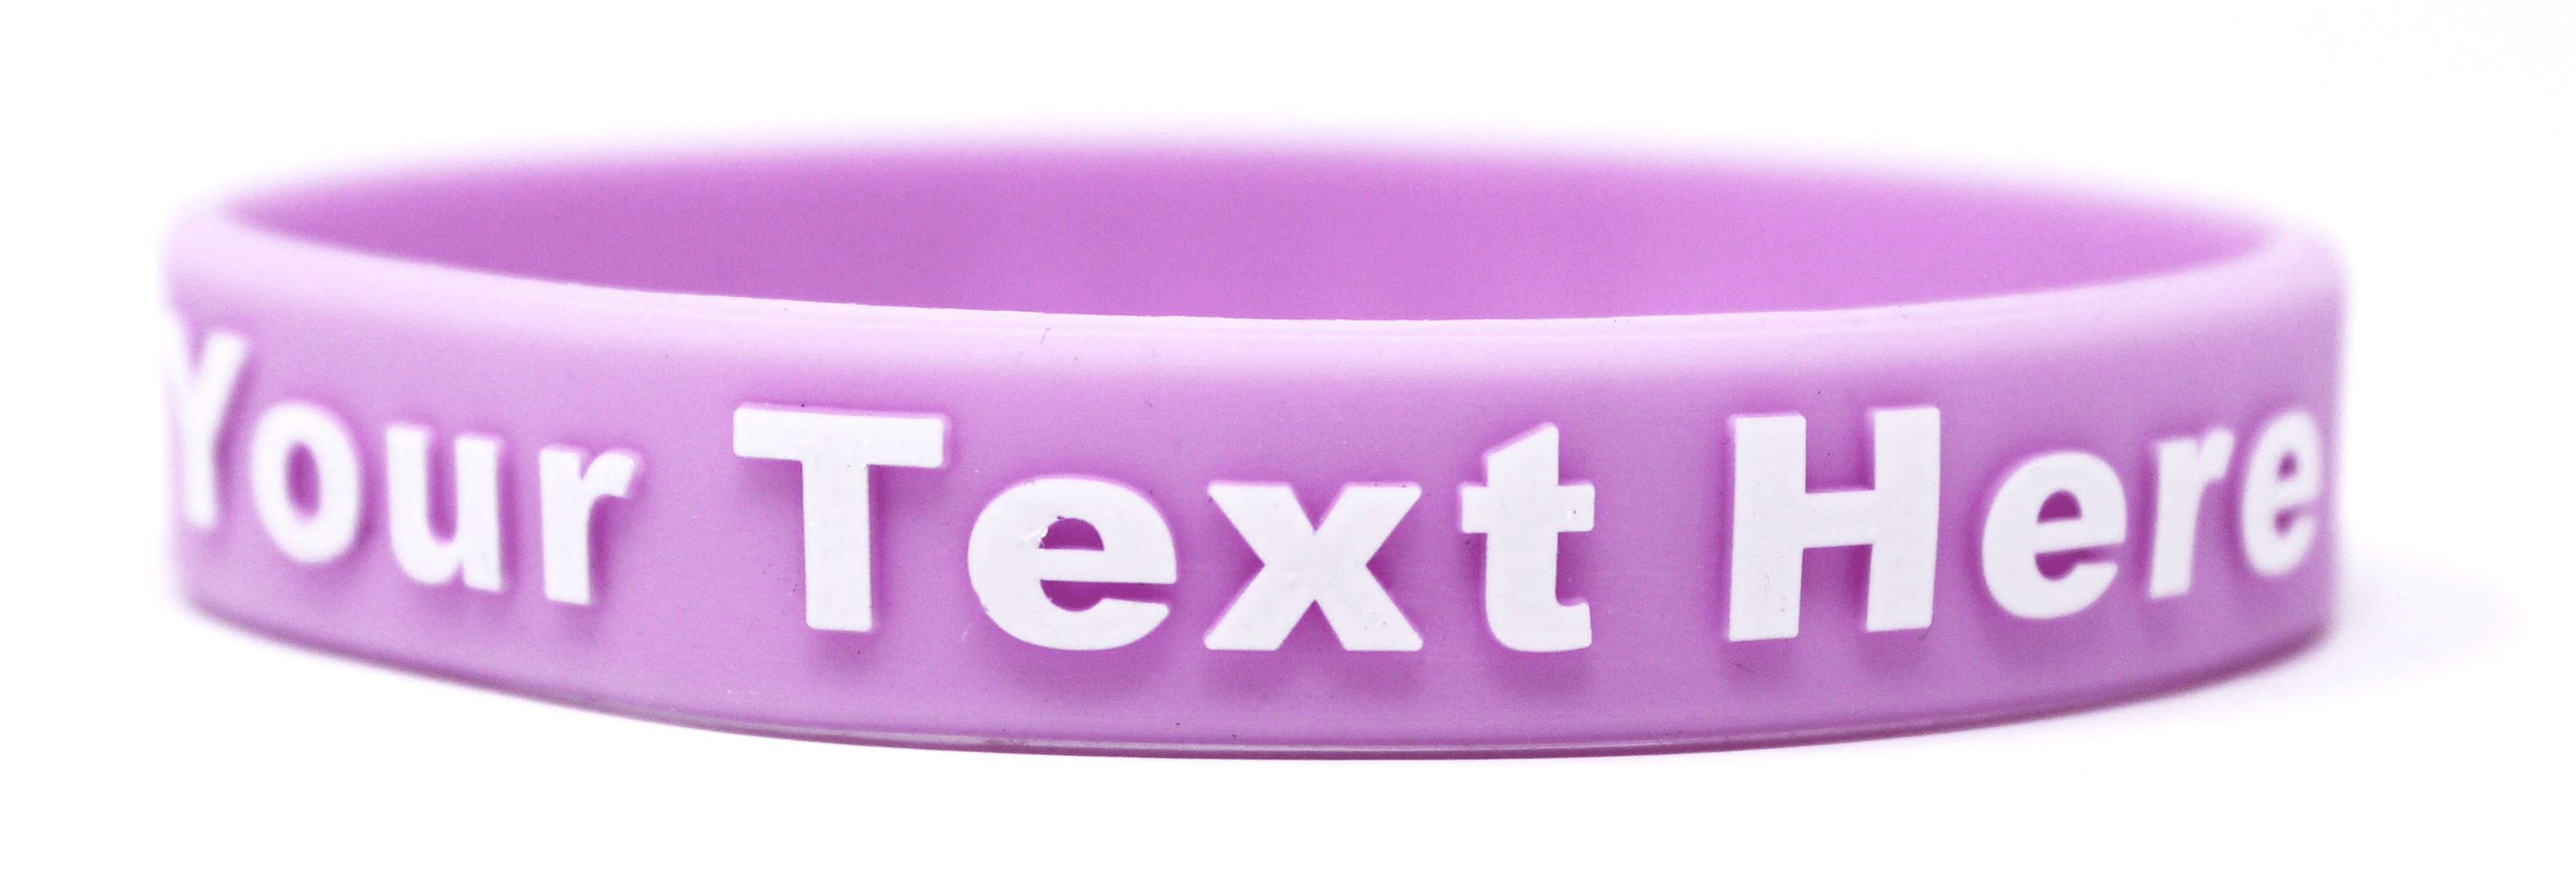 what does a purple bracelet mean